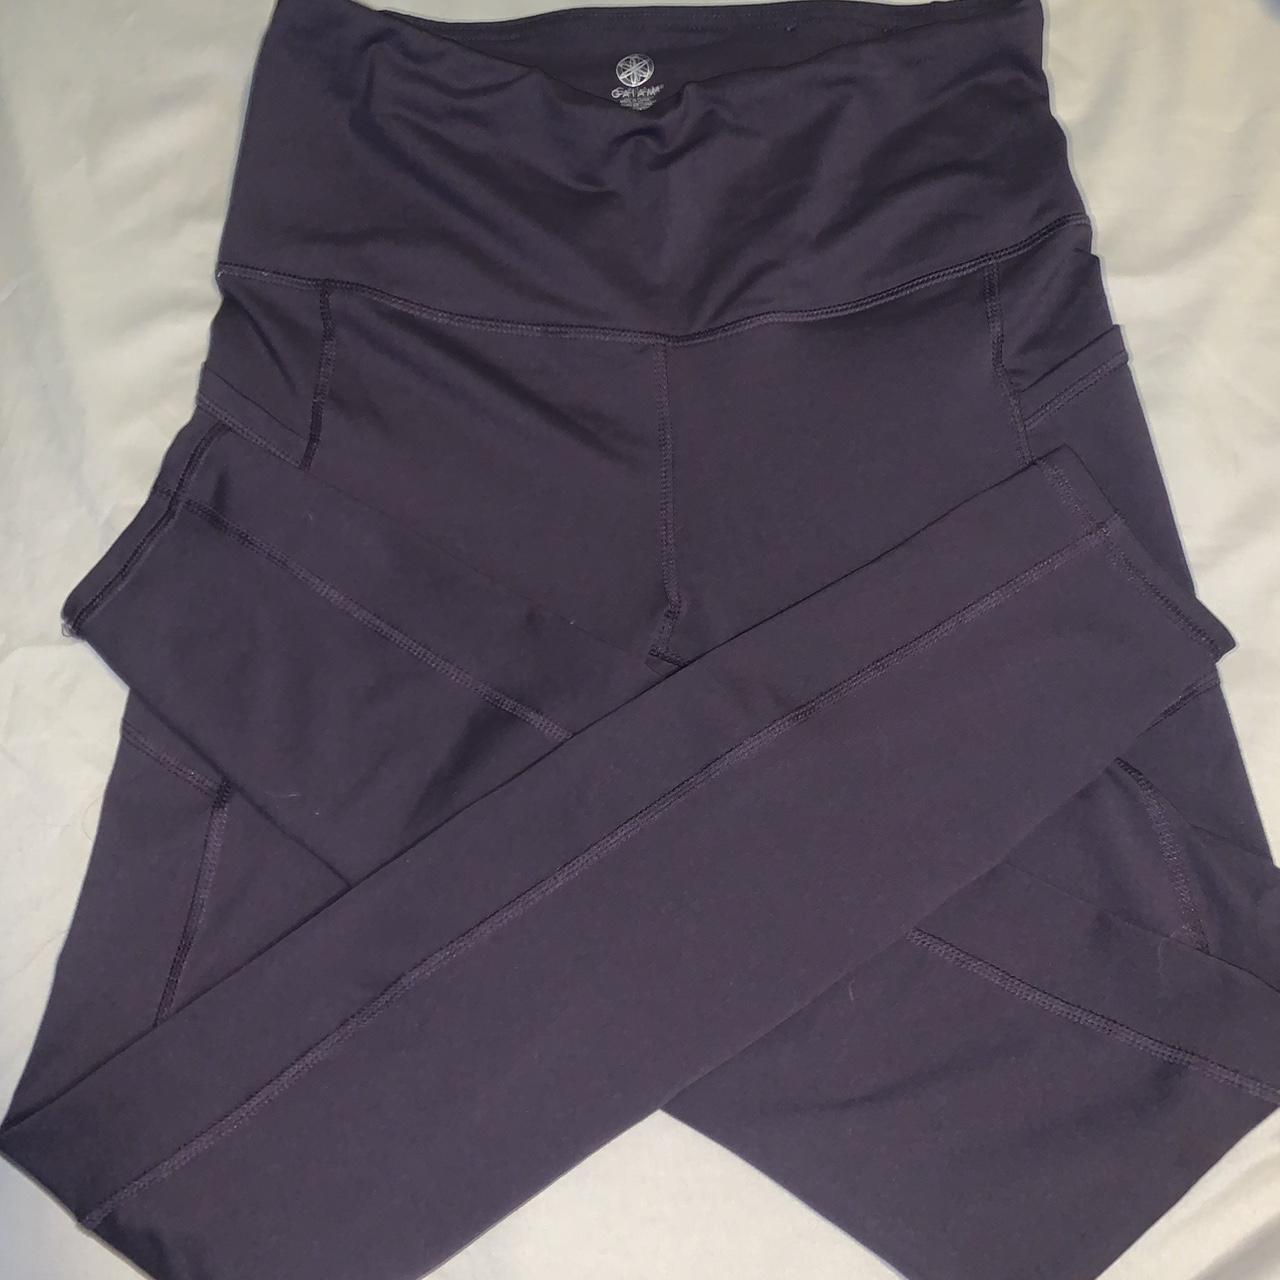 dark purple leggings size M worn a few times but - Depop